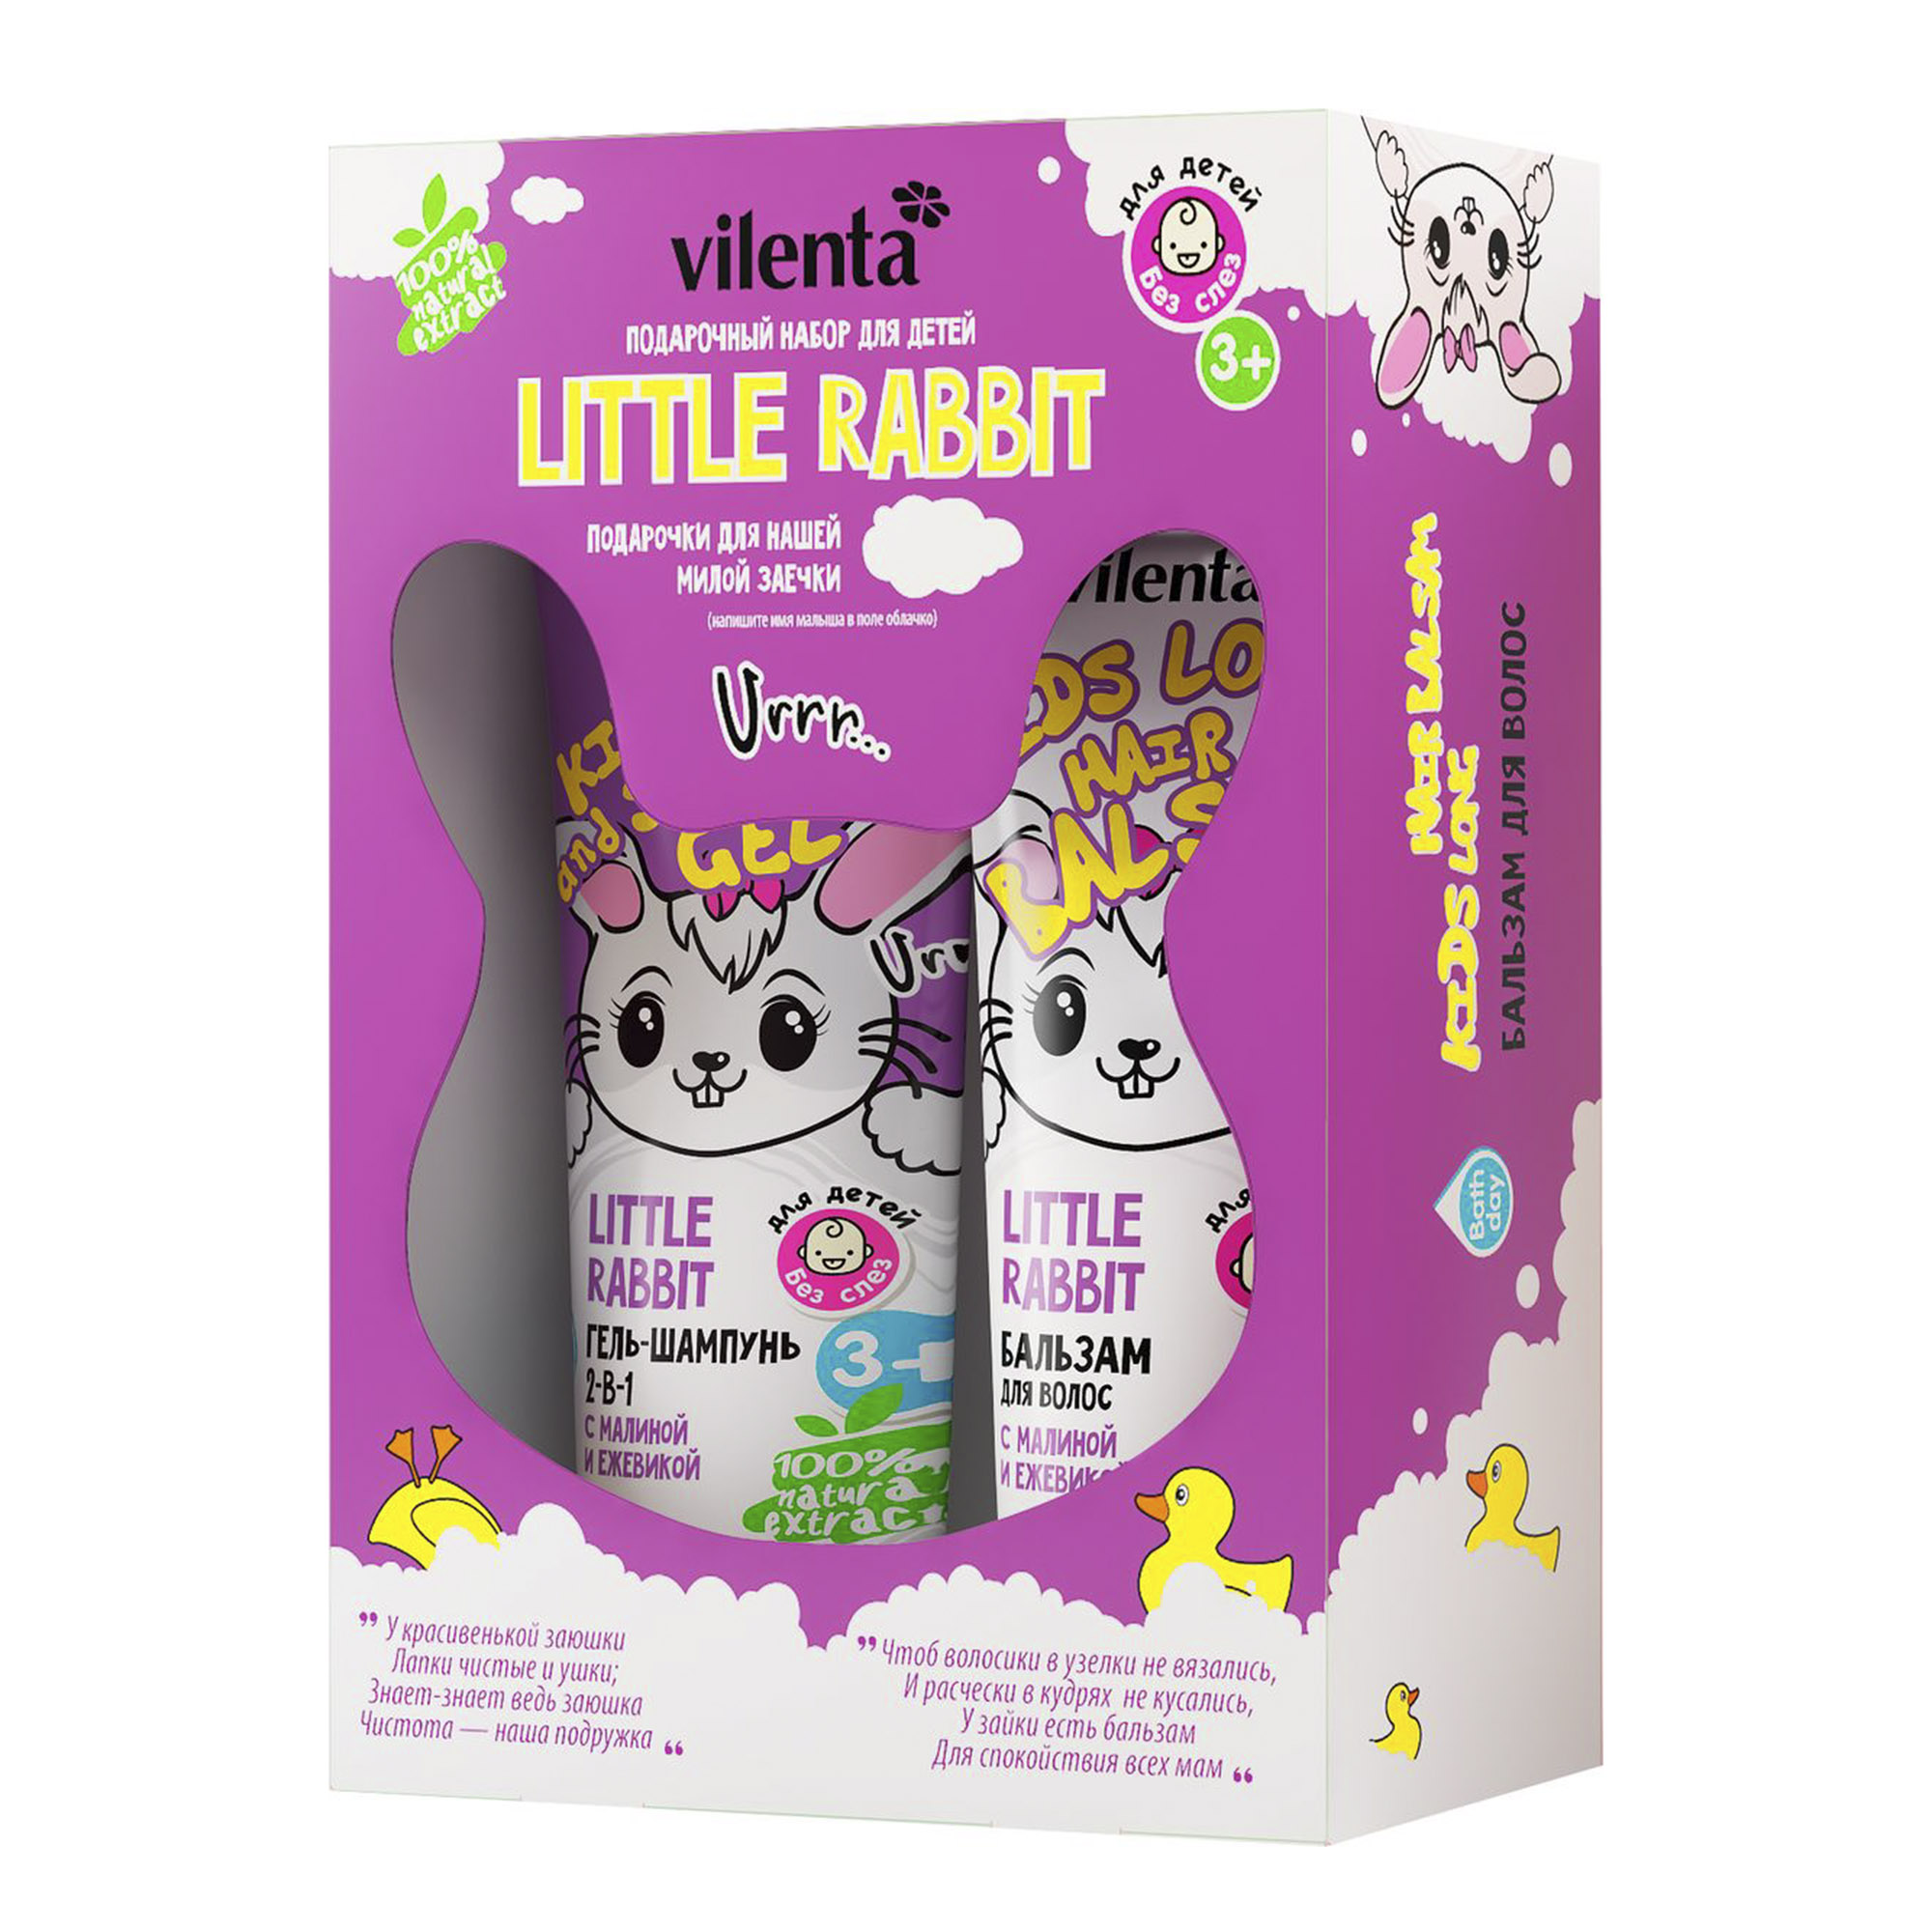 Детский подарочный набор средств по уходу за волосами Vilenta Little Rabbit